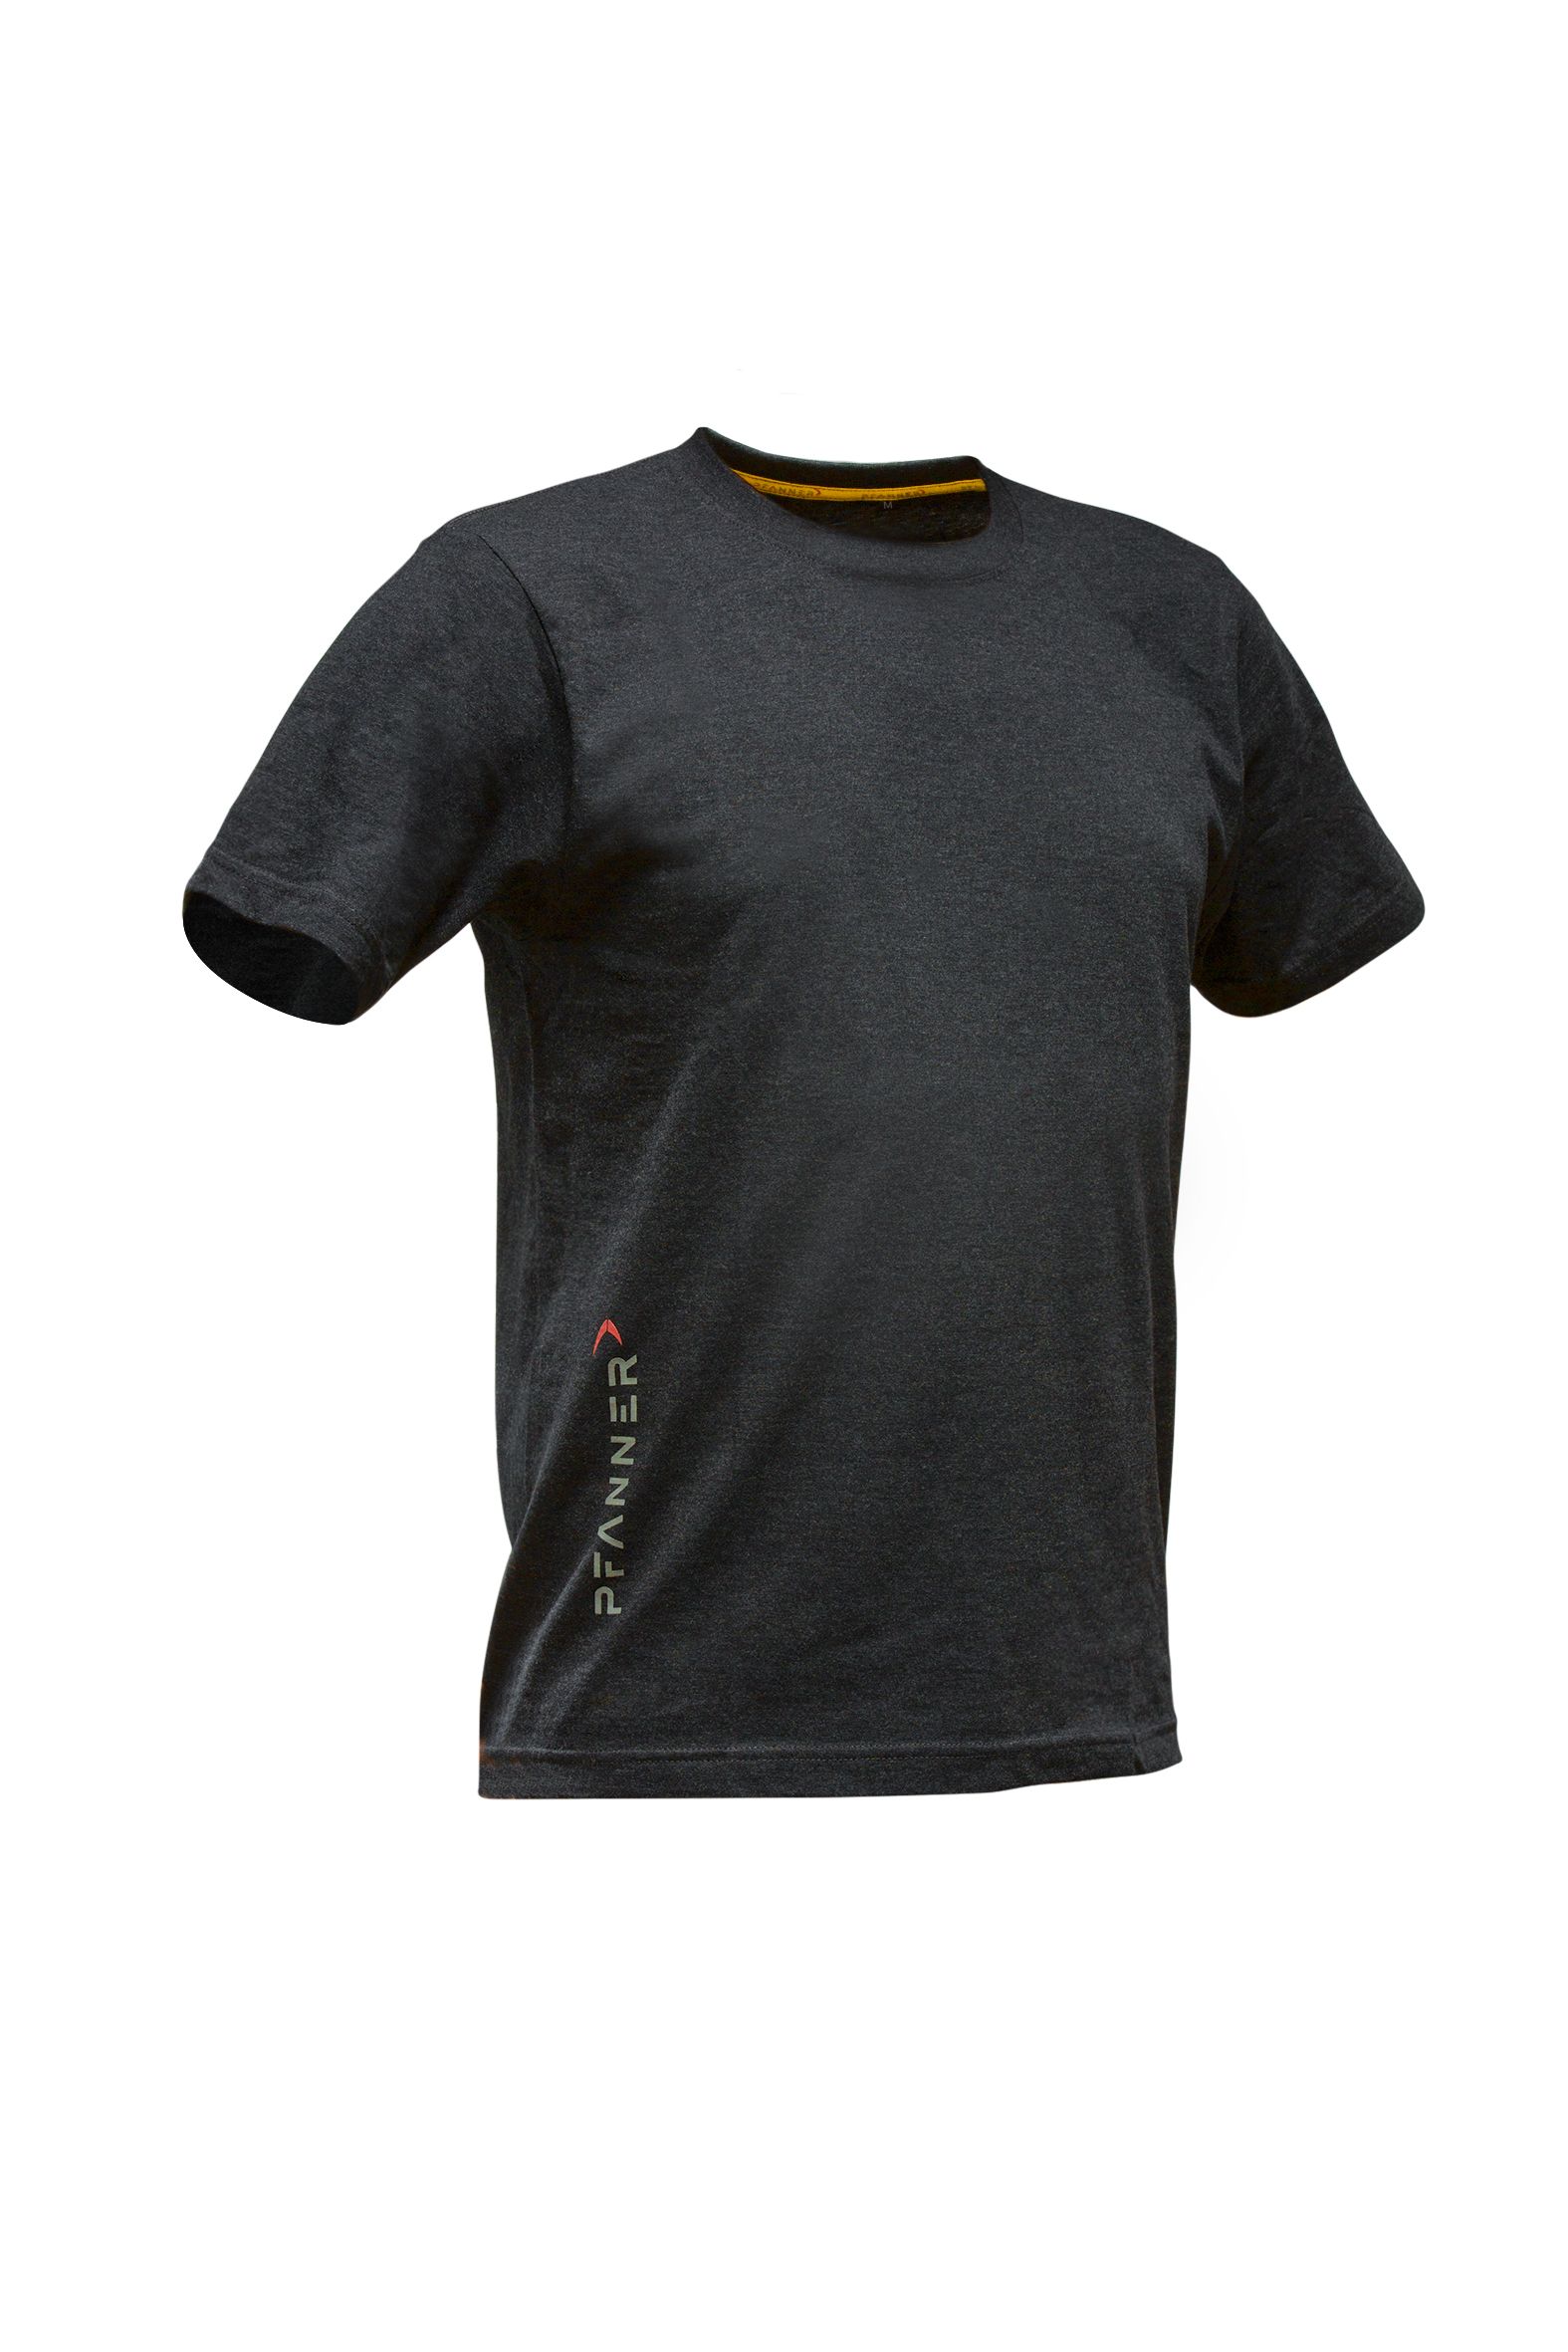 Pfanner T-Shirt Set, 2 Stück | KRENGEL Landtechnik | Sport-T-Shirts